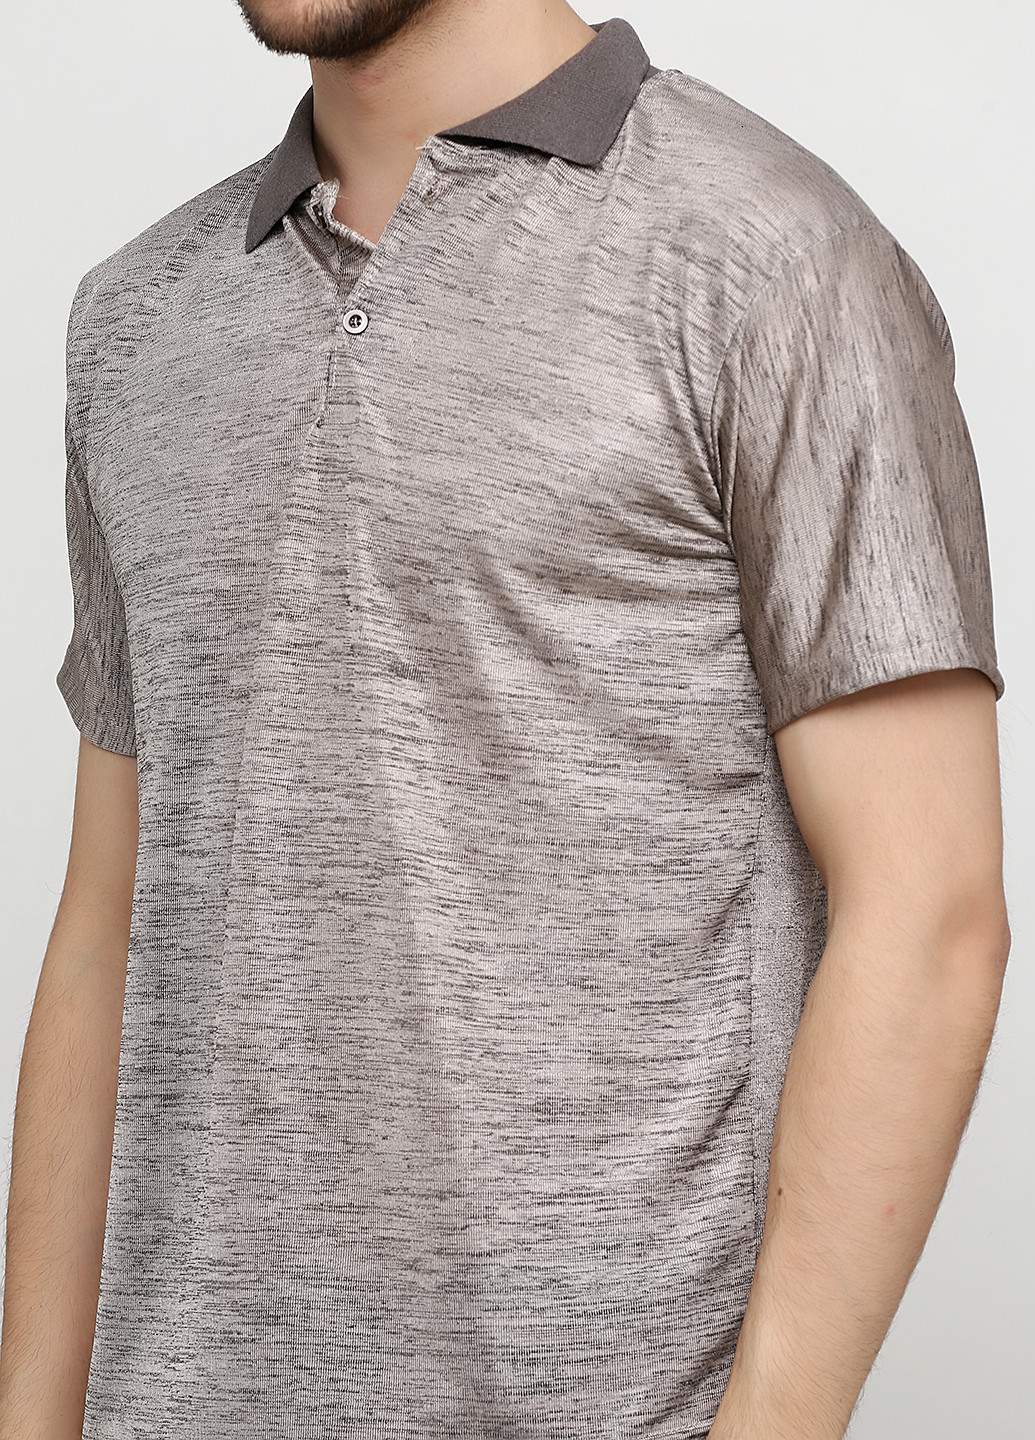 Бежевая футболка-поло для мужчин Chiarotex меланжевая